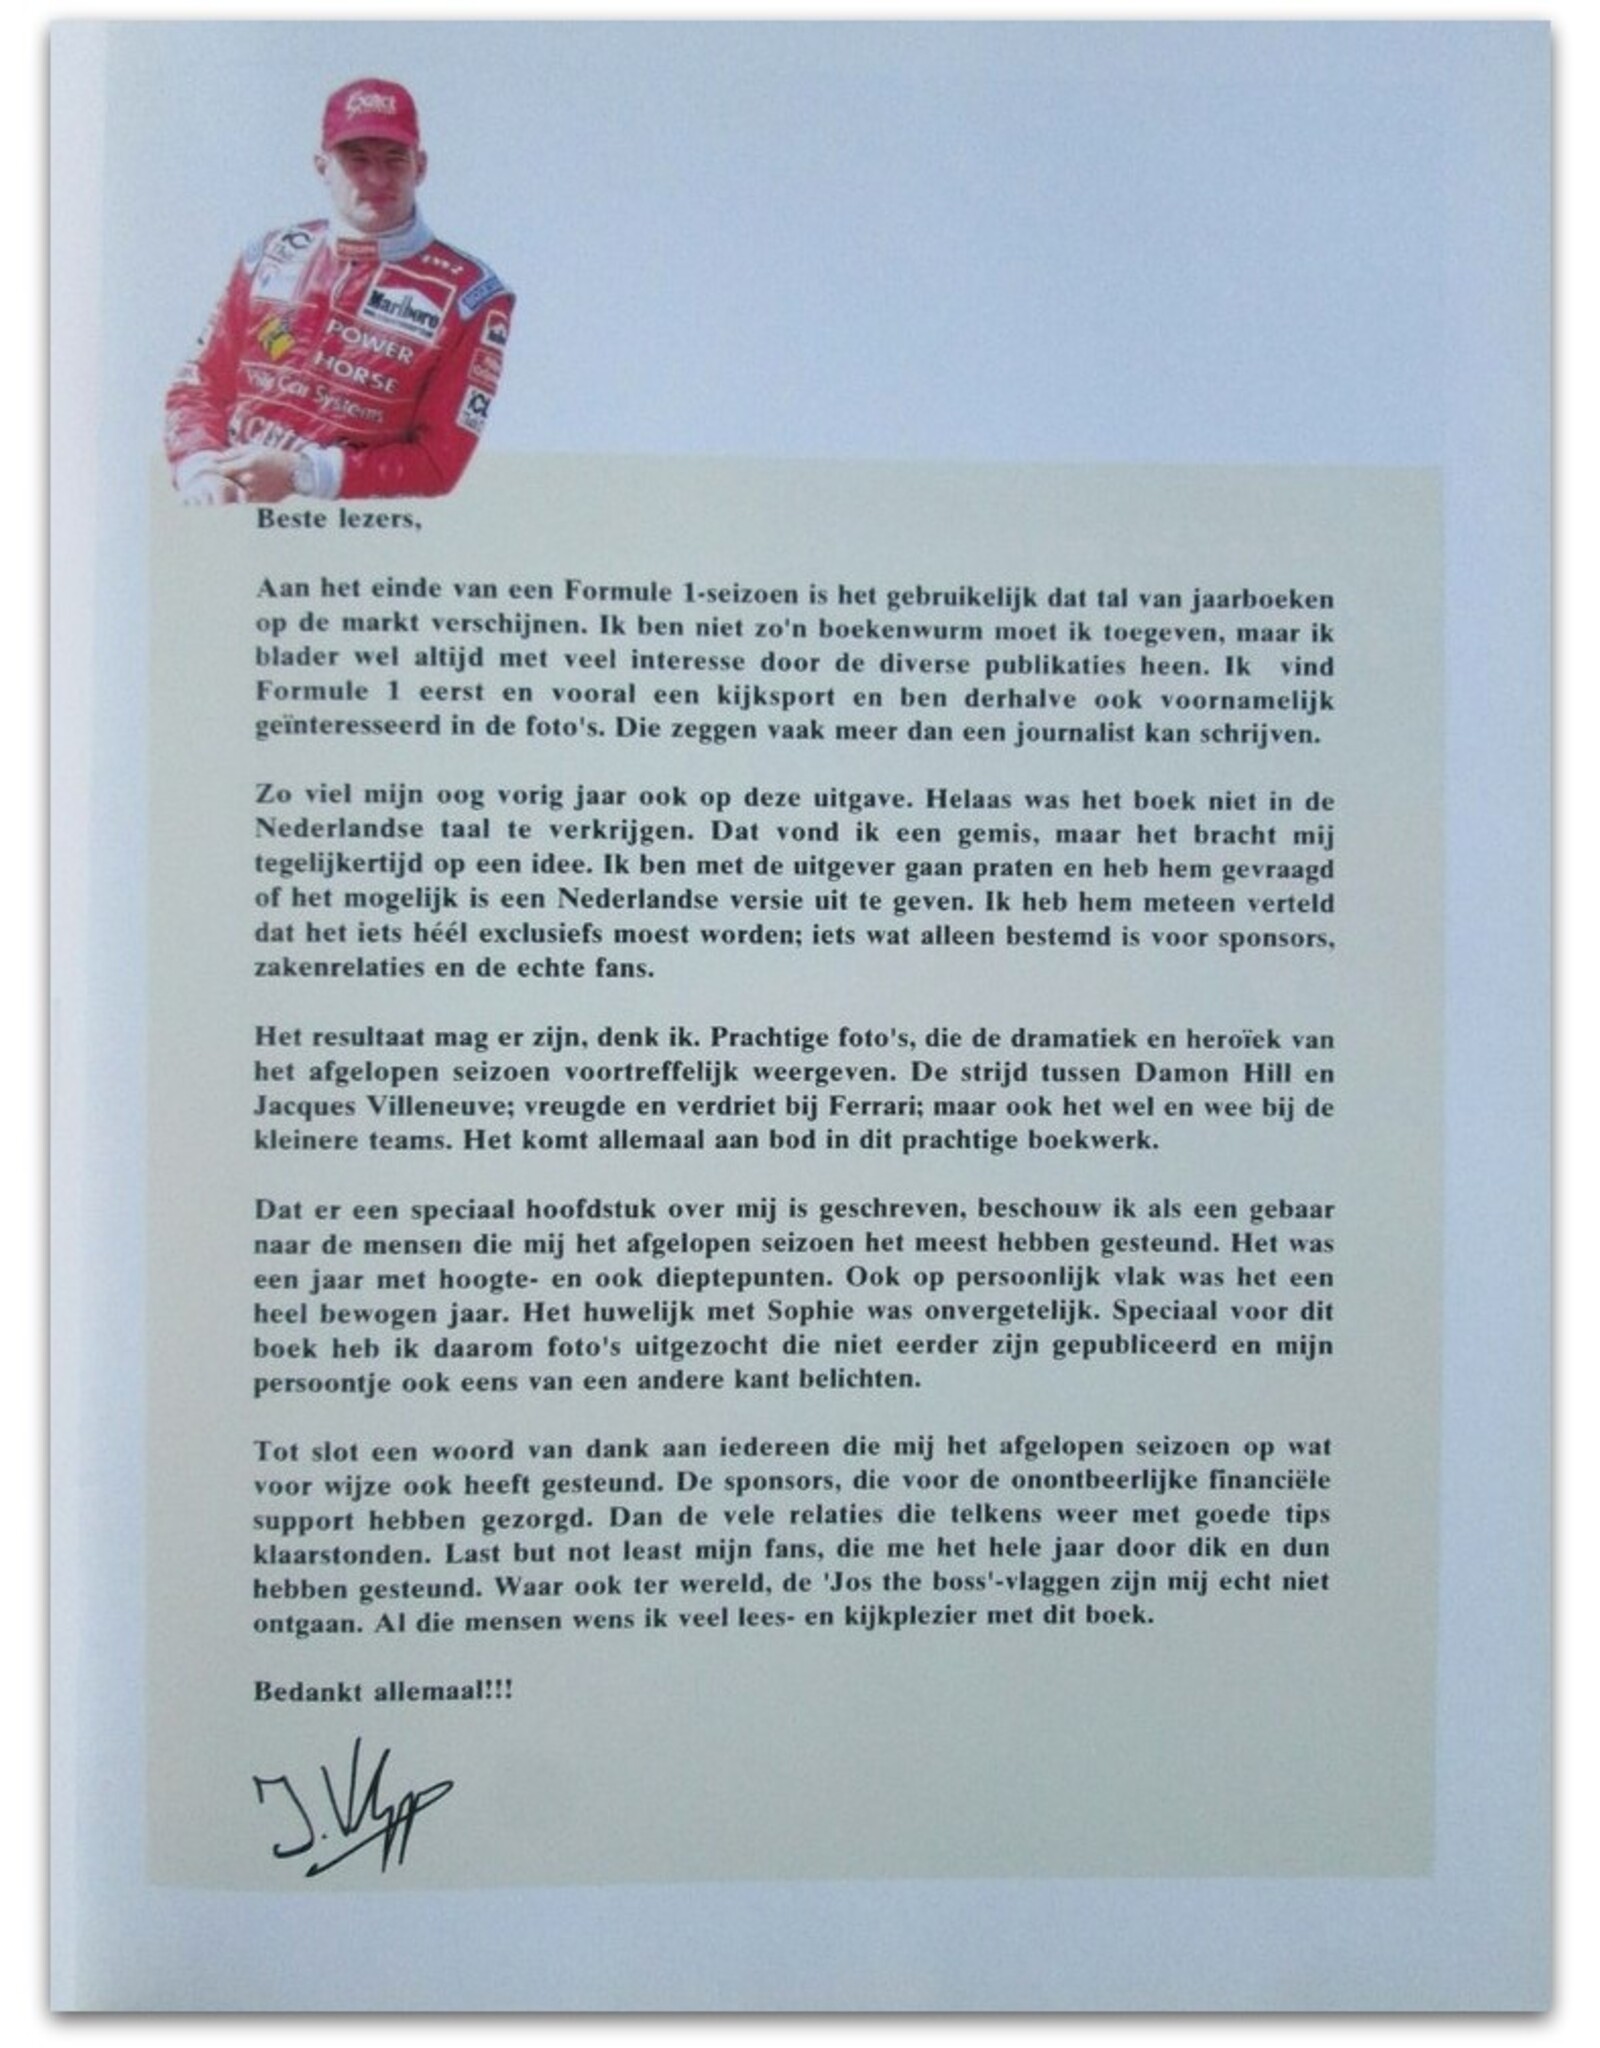 Roberto Boccafogli - Terugblik op het Wereldkampioenschap F1 '96. Achter de schermen [with] Een portret van Jos Verstappen